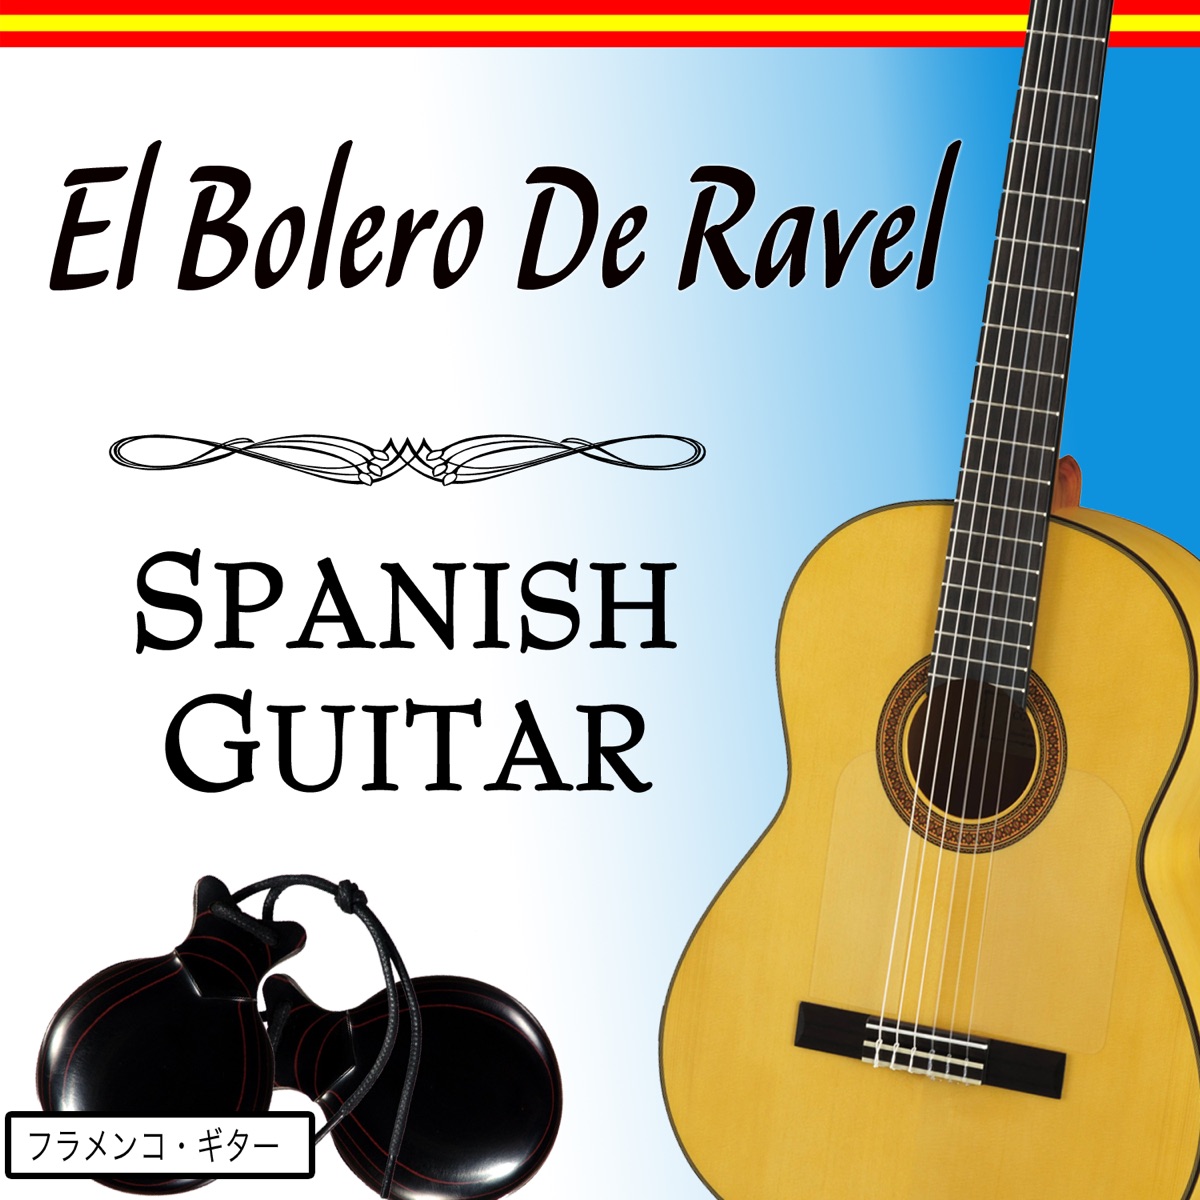 El Bolero De Ravel With Spanish Guitar - EP - Album by Salvador Andrades -  Apple Music